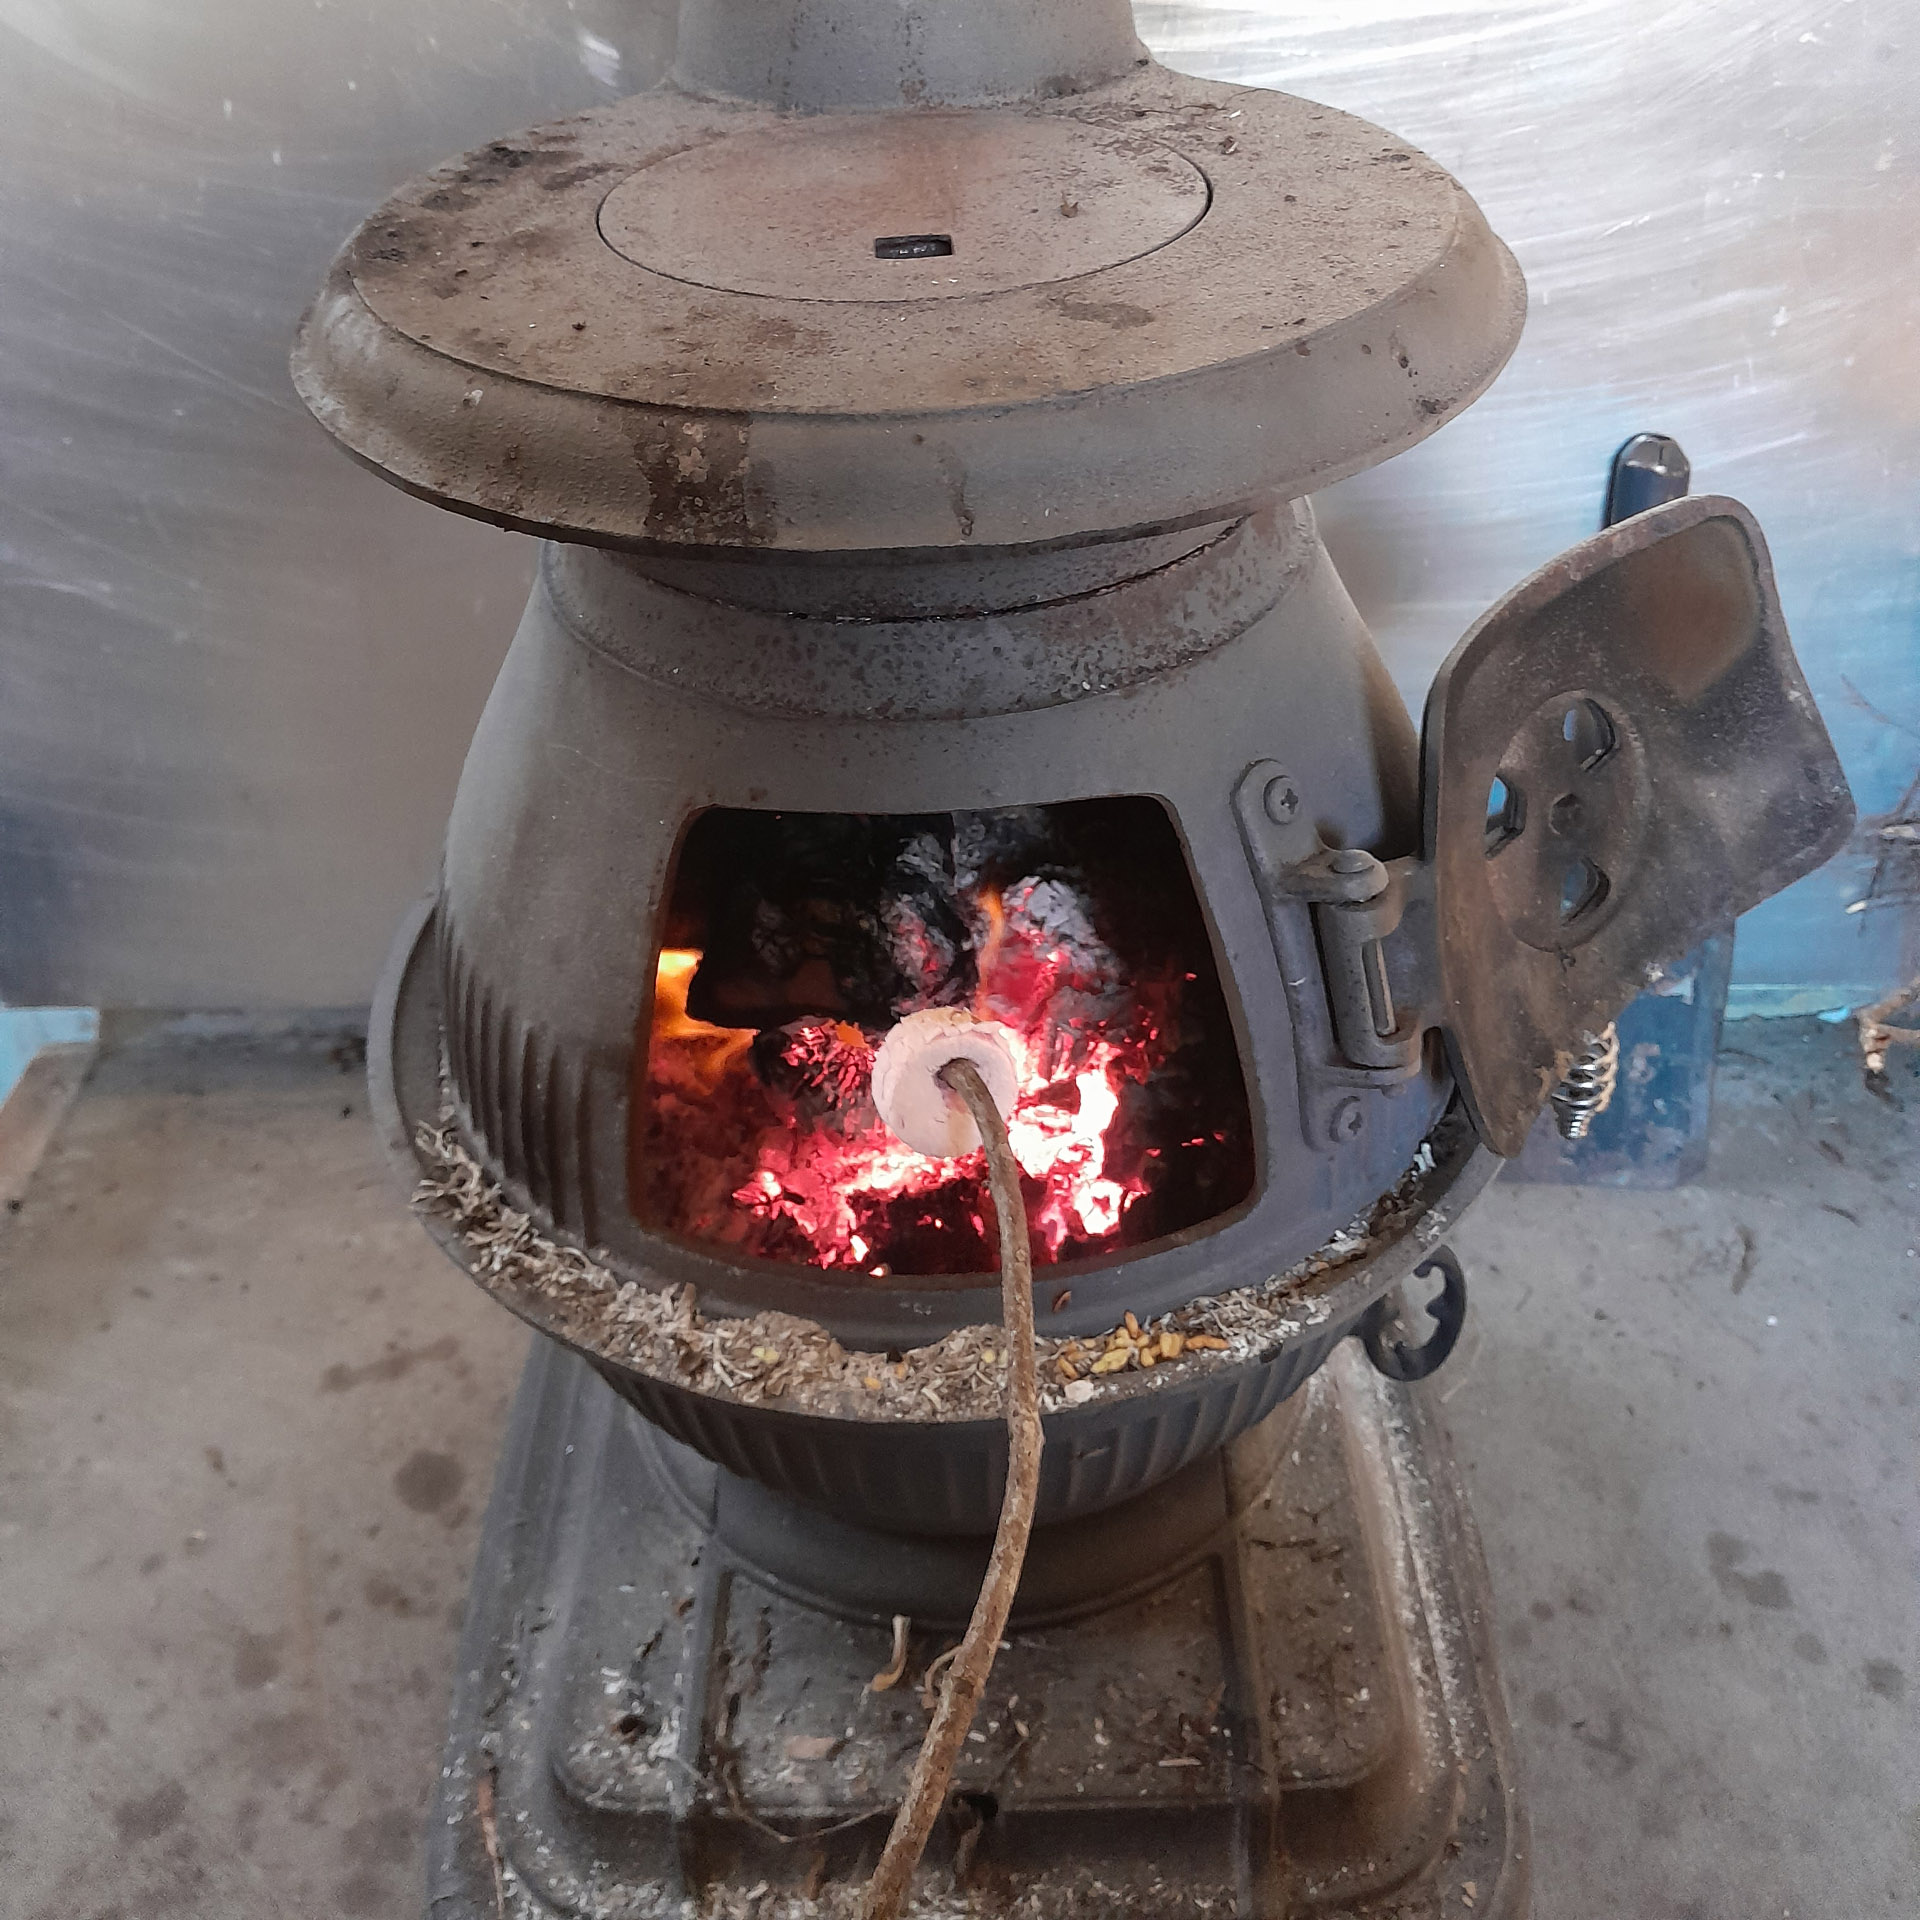 Toasting marshmallows at Jam Hut Seaward Kaikoura